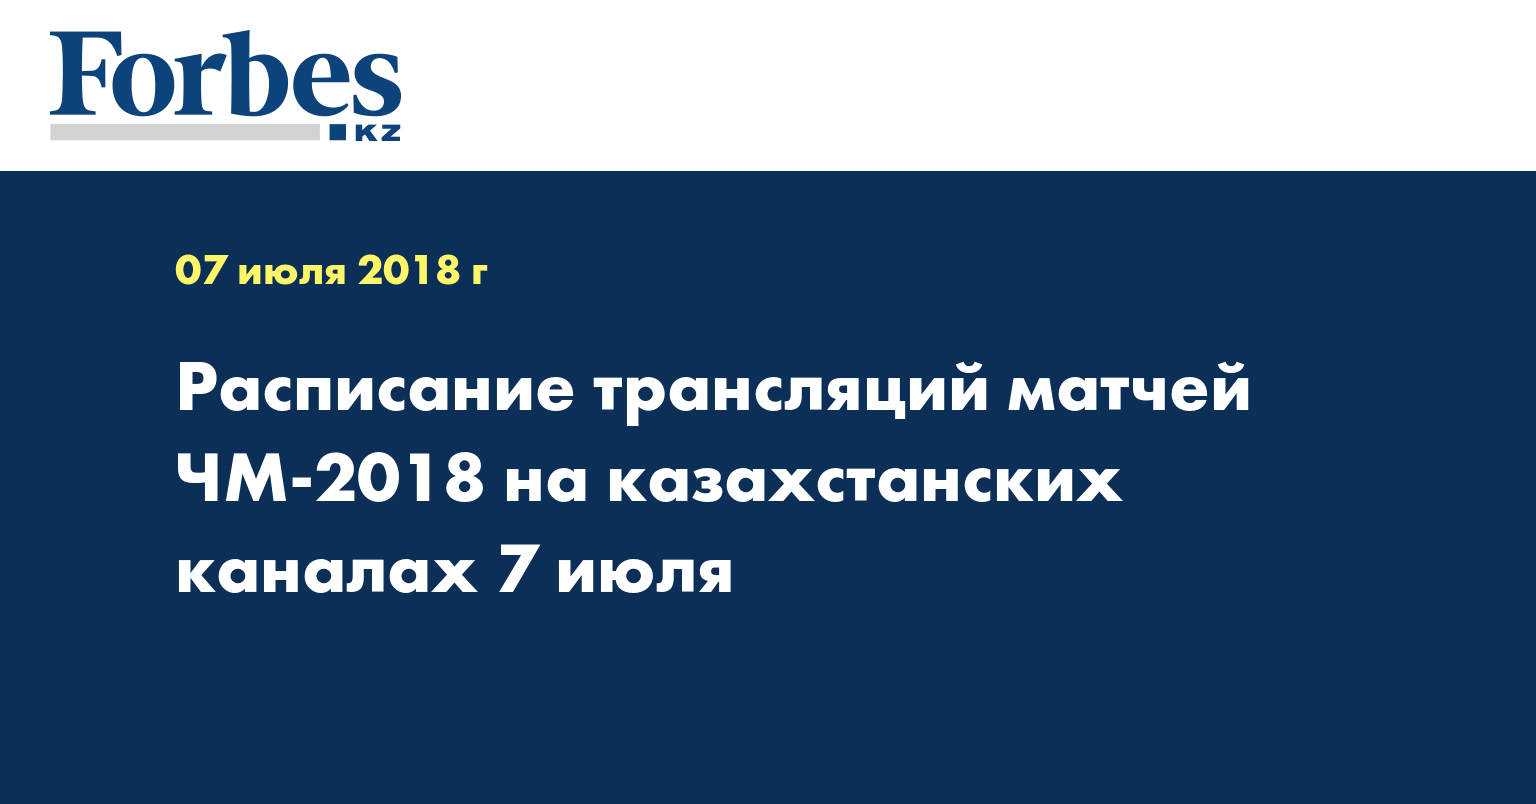 Расписание трансляций матчей ЧМ-2018 на казахстанских каналах 7 июля 